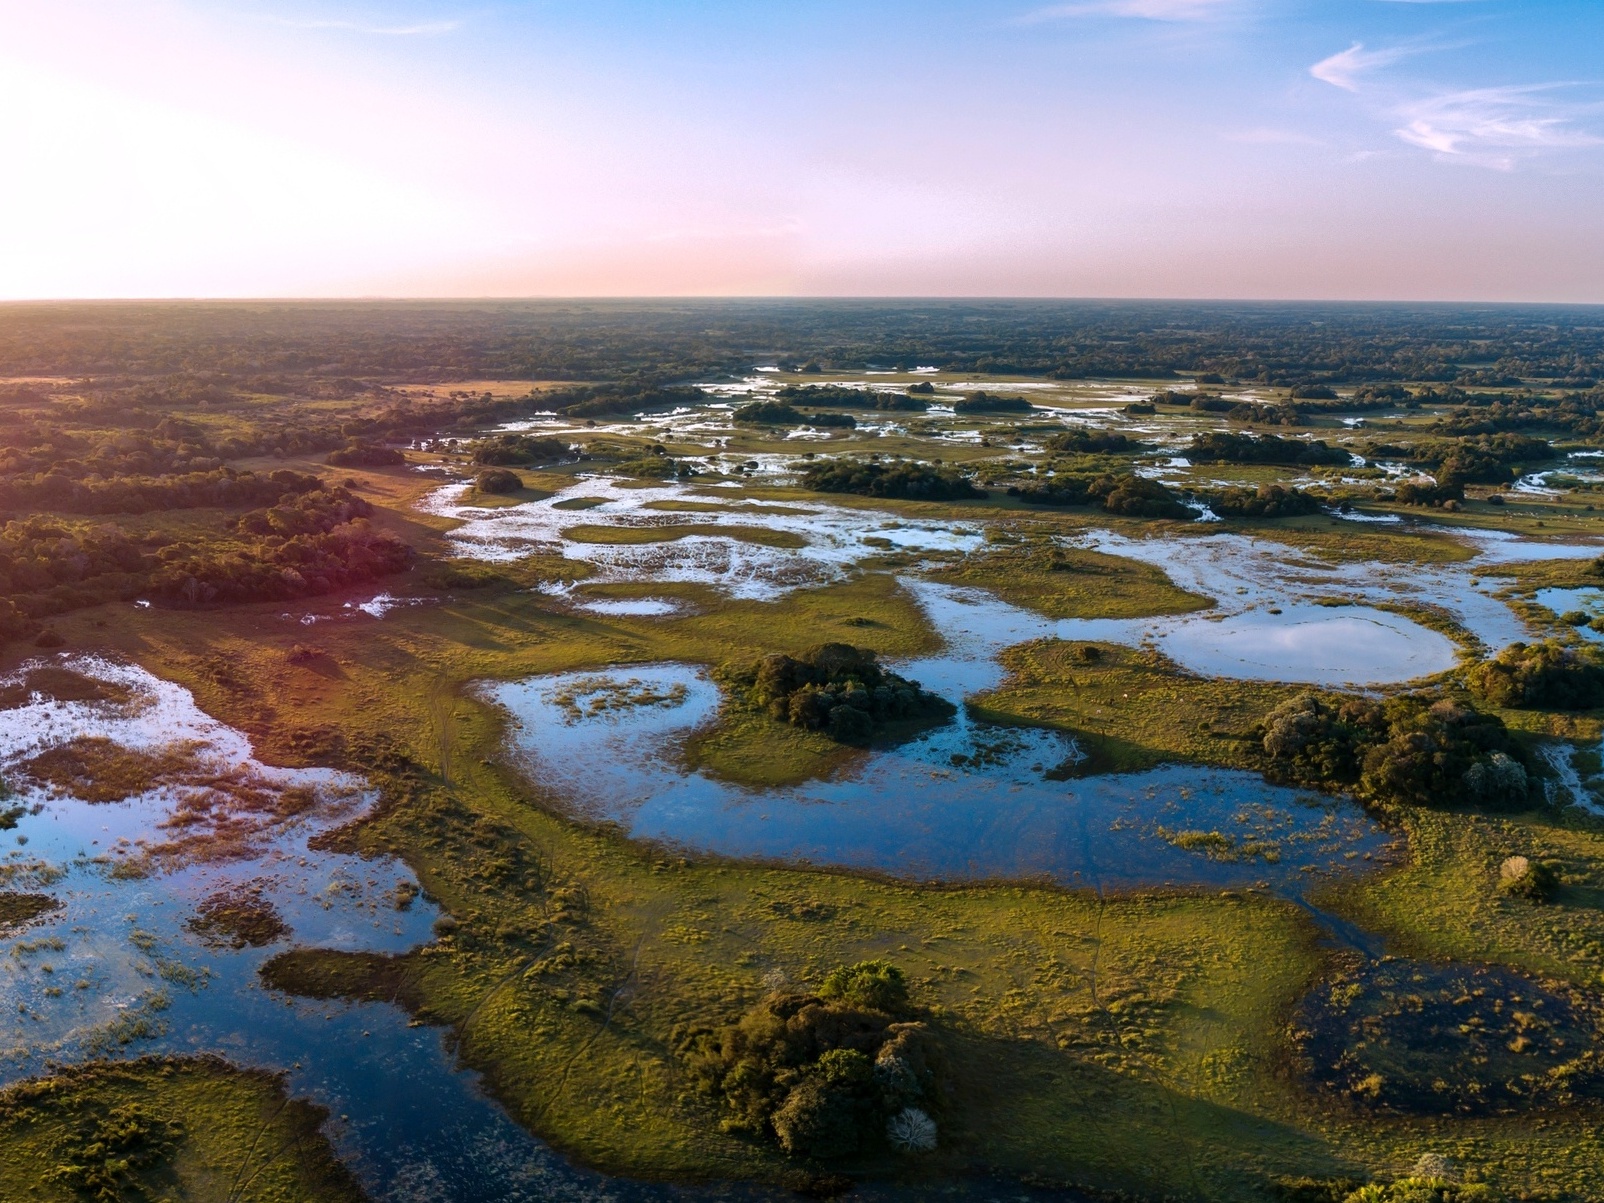 Passeios no Pantanal: por que fazer cavalgada no cerrado do Mato Grosso? -  Rede de Hotéis Mato Grosso